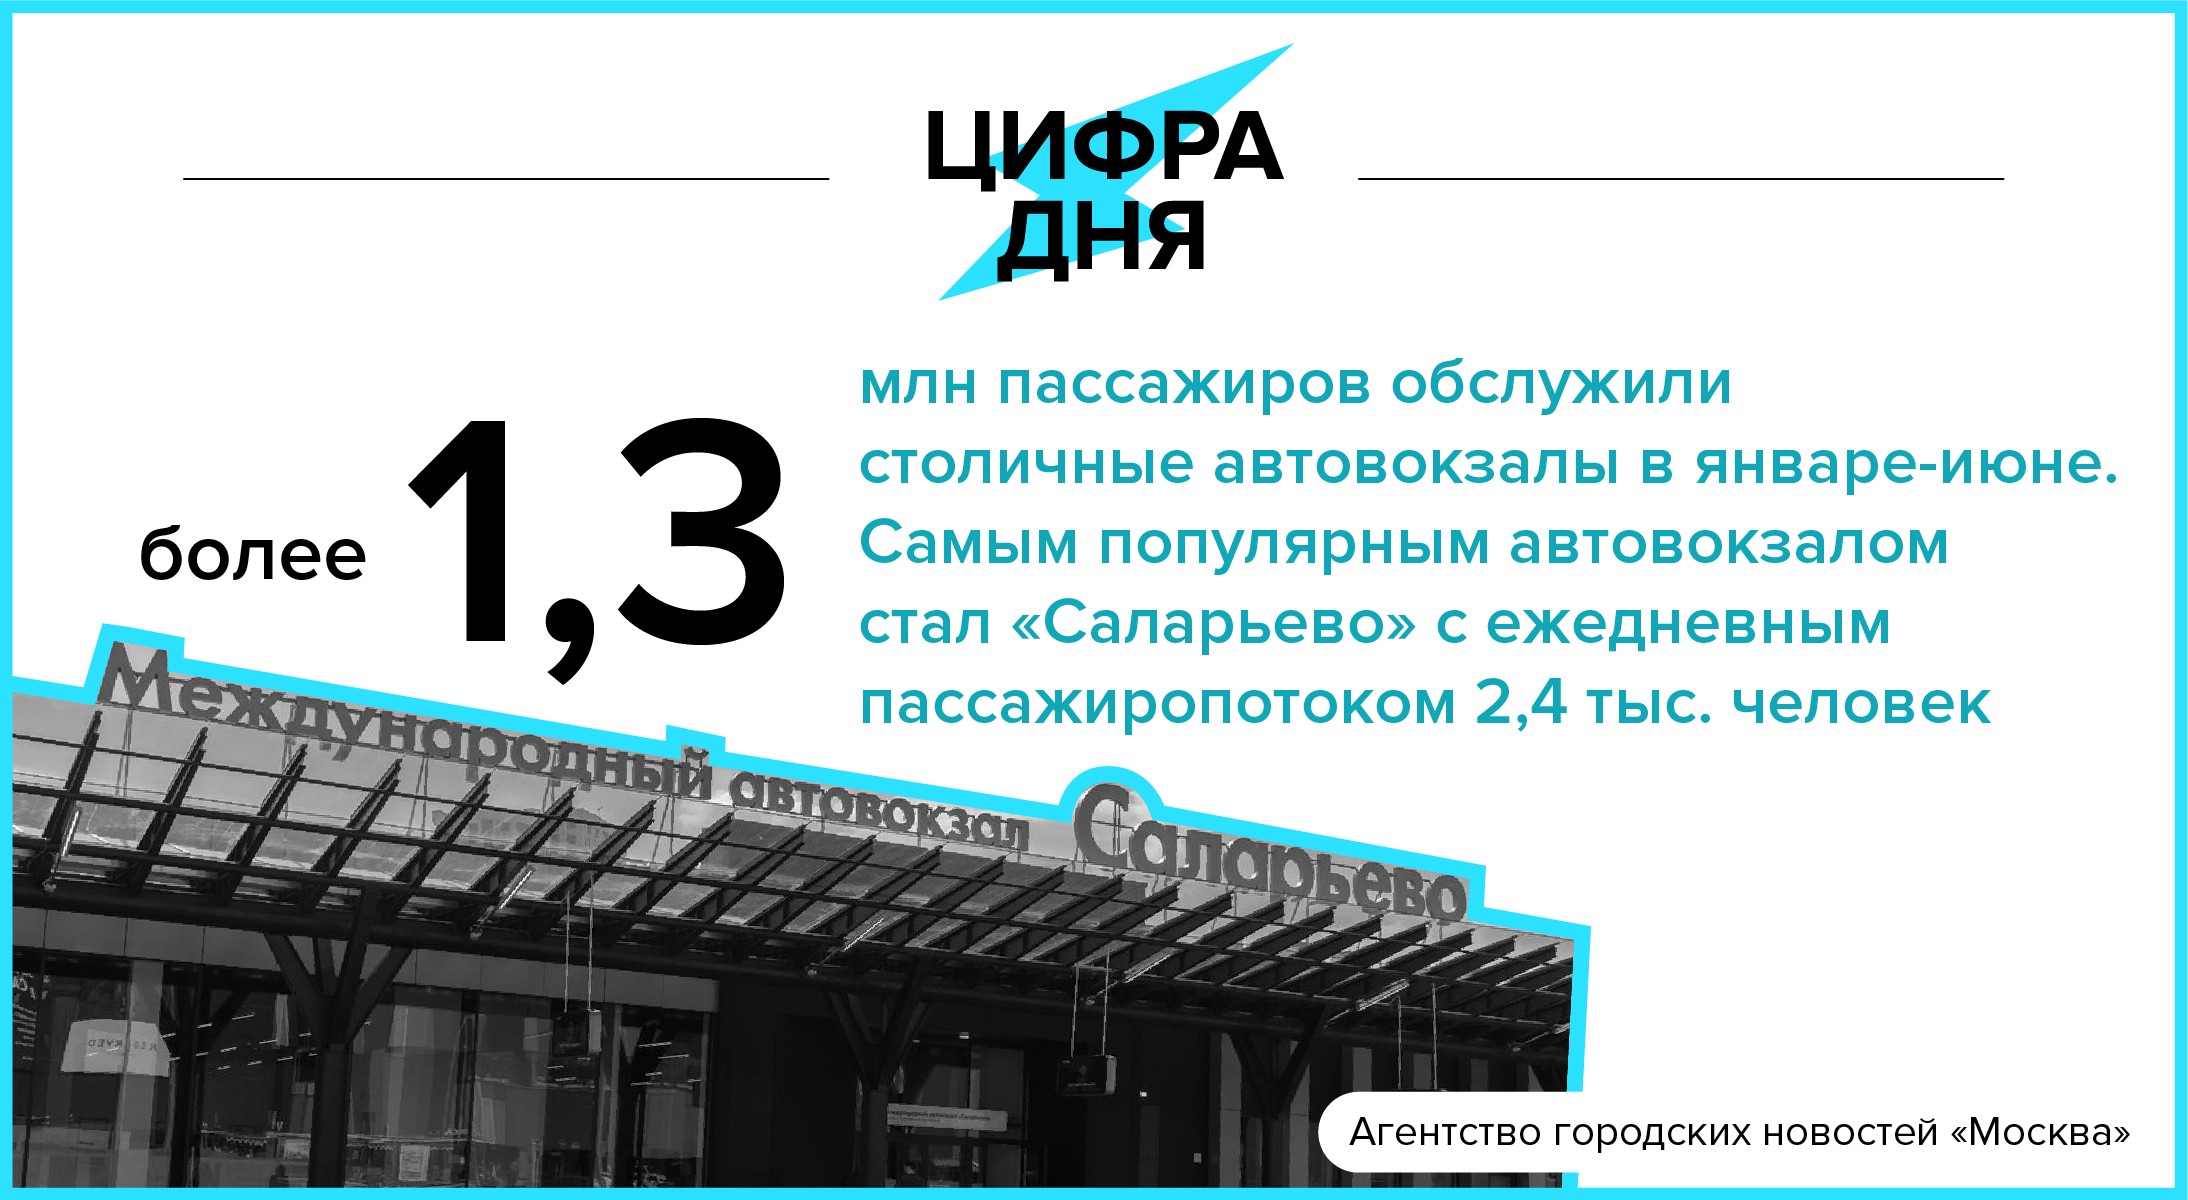 Агентство городских новостей Москва логотип. Дата сегодня в цифрах. 16 Июля календарь. Автовокзал столичный купить билет